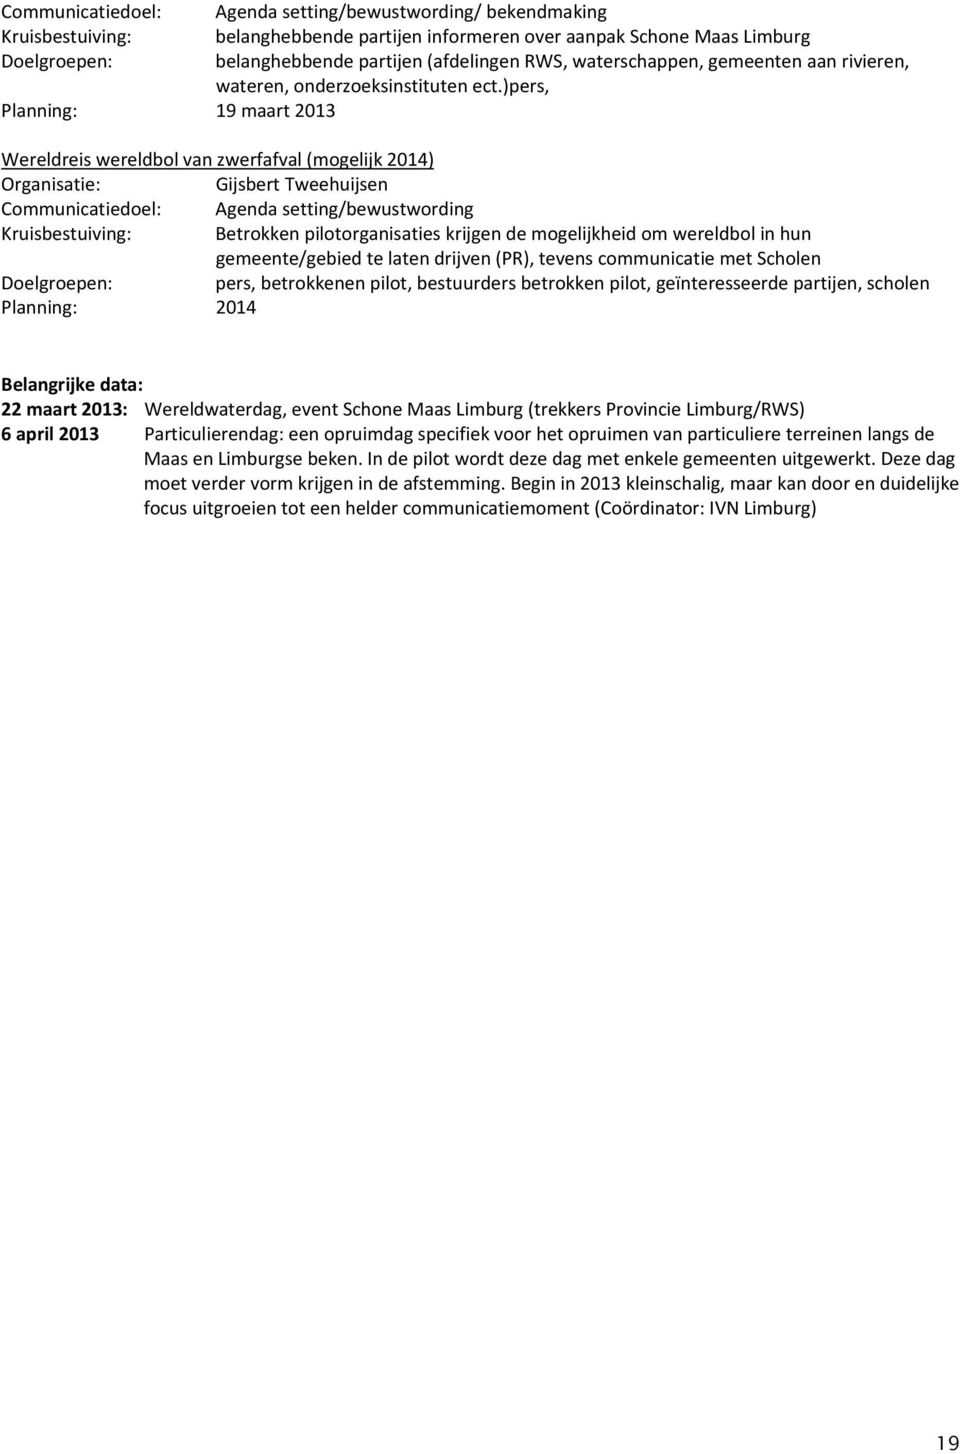 )pers, Planning: 19 maart 2013 Wereldreis wereldbol van zwerfafval (mogelijk 2014) Gijsbert Tweehuijsen Communicatiedoel: Agenda setting/bewustwording Kruisbestuiving: Betrokken pilotorganisaties